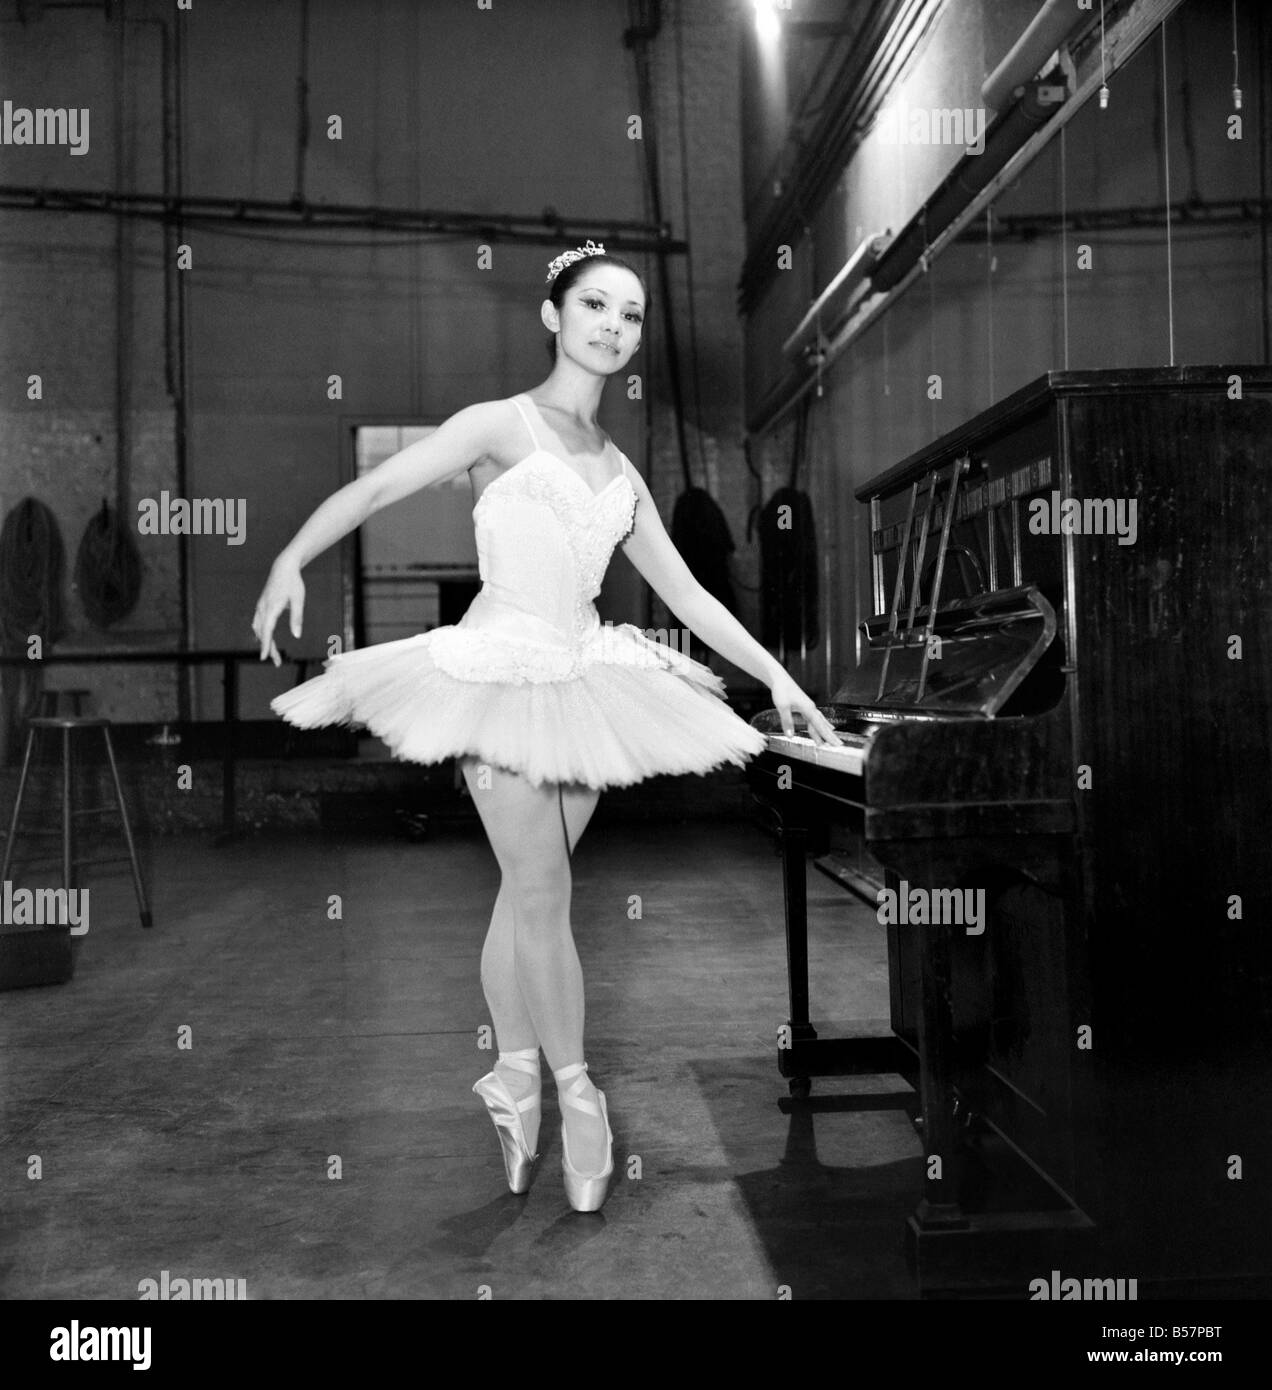 Giapponese Ballerina: Noriko Ohara. Quattro piedini di dieci centimetri di  altezza e di peso inferiore ai sette stone questa ragazza ha percorso una  lunga strada per entrare nel mondo delle ballerine a